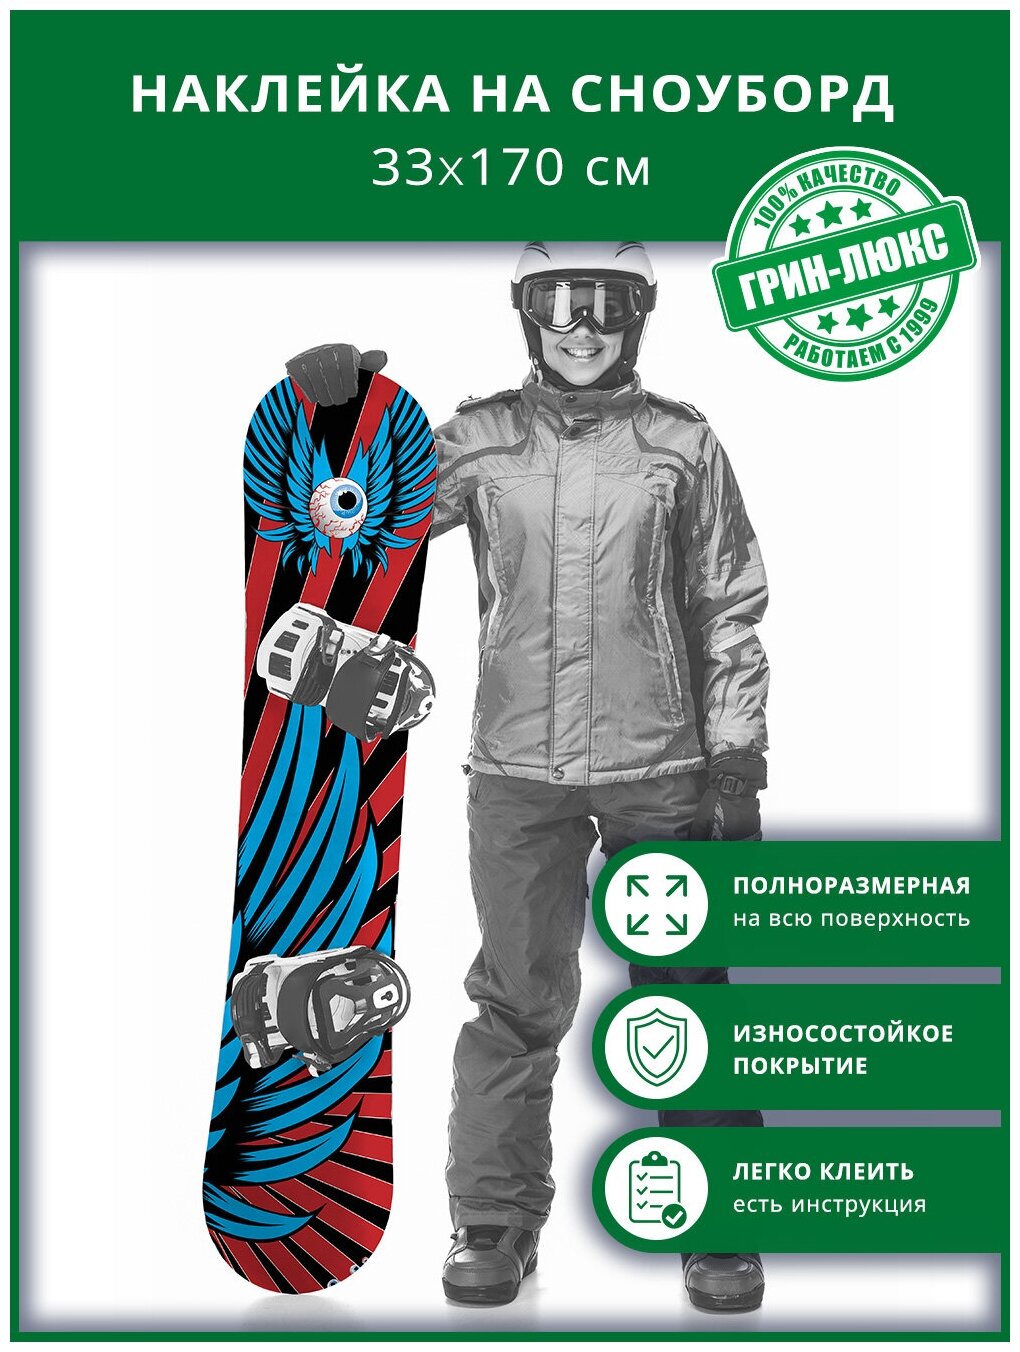 Наклейка на сноуборд с защитным глянцевым покрытием 33х170 см "Пернатый снитч"